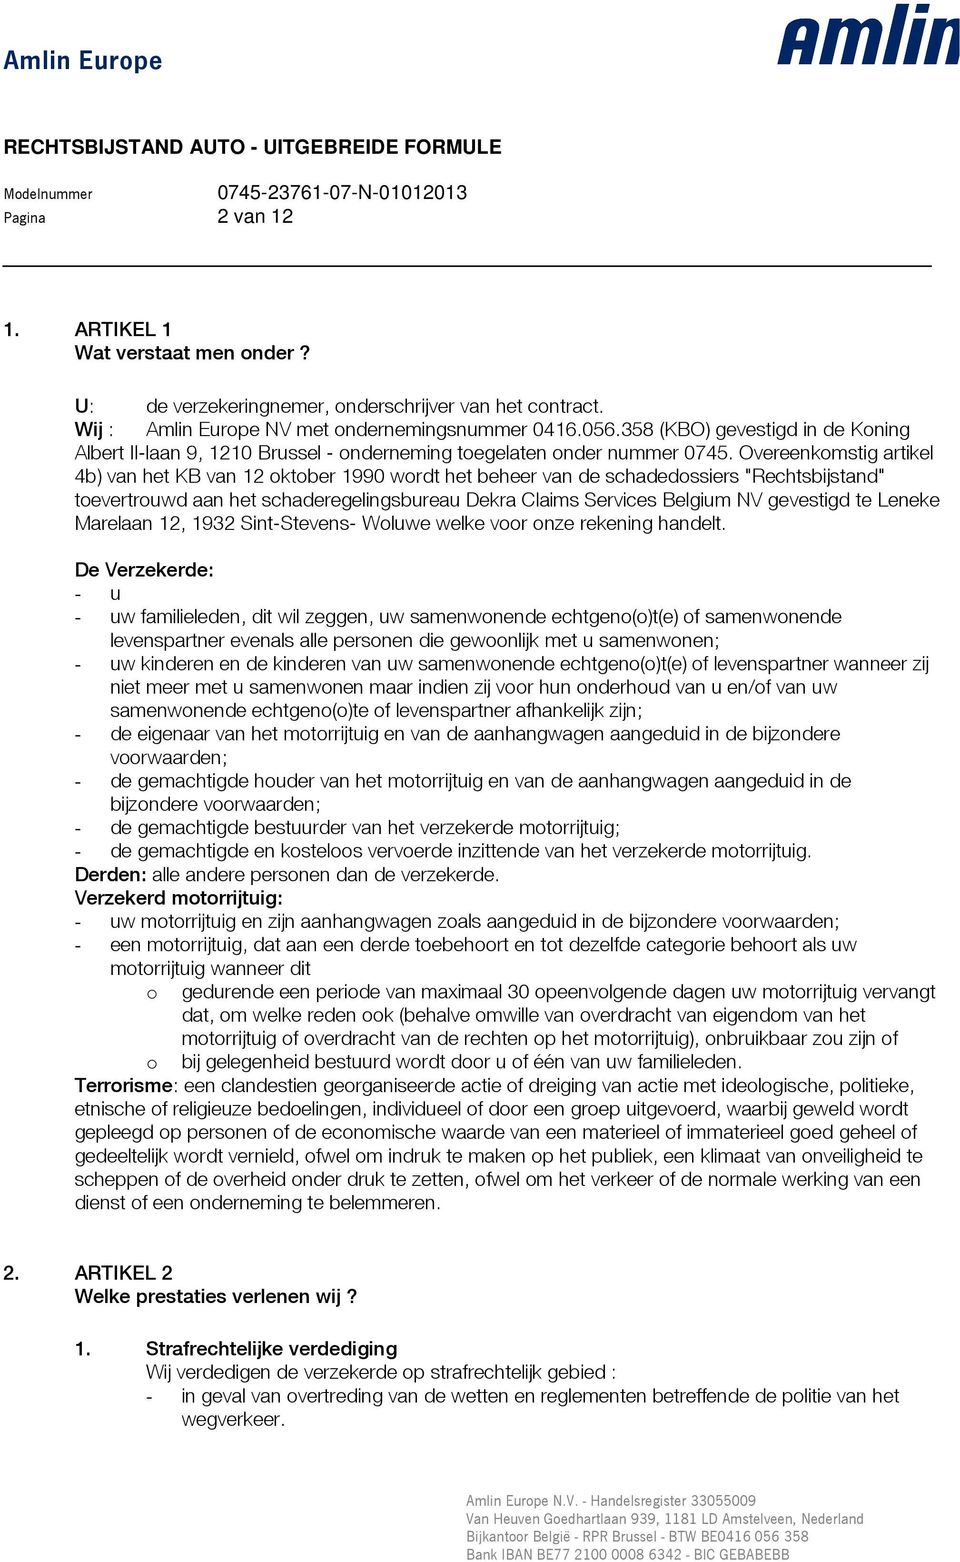 Overeenkomstig artikel 4b) van het KB van 12 oktober 1990 wordt het beheer van de schadedossiers "Rechtsbijstand" toevertrouwd aan het schaderegelingsbureau Dekra Claims Services Belgium NV gevestigd